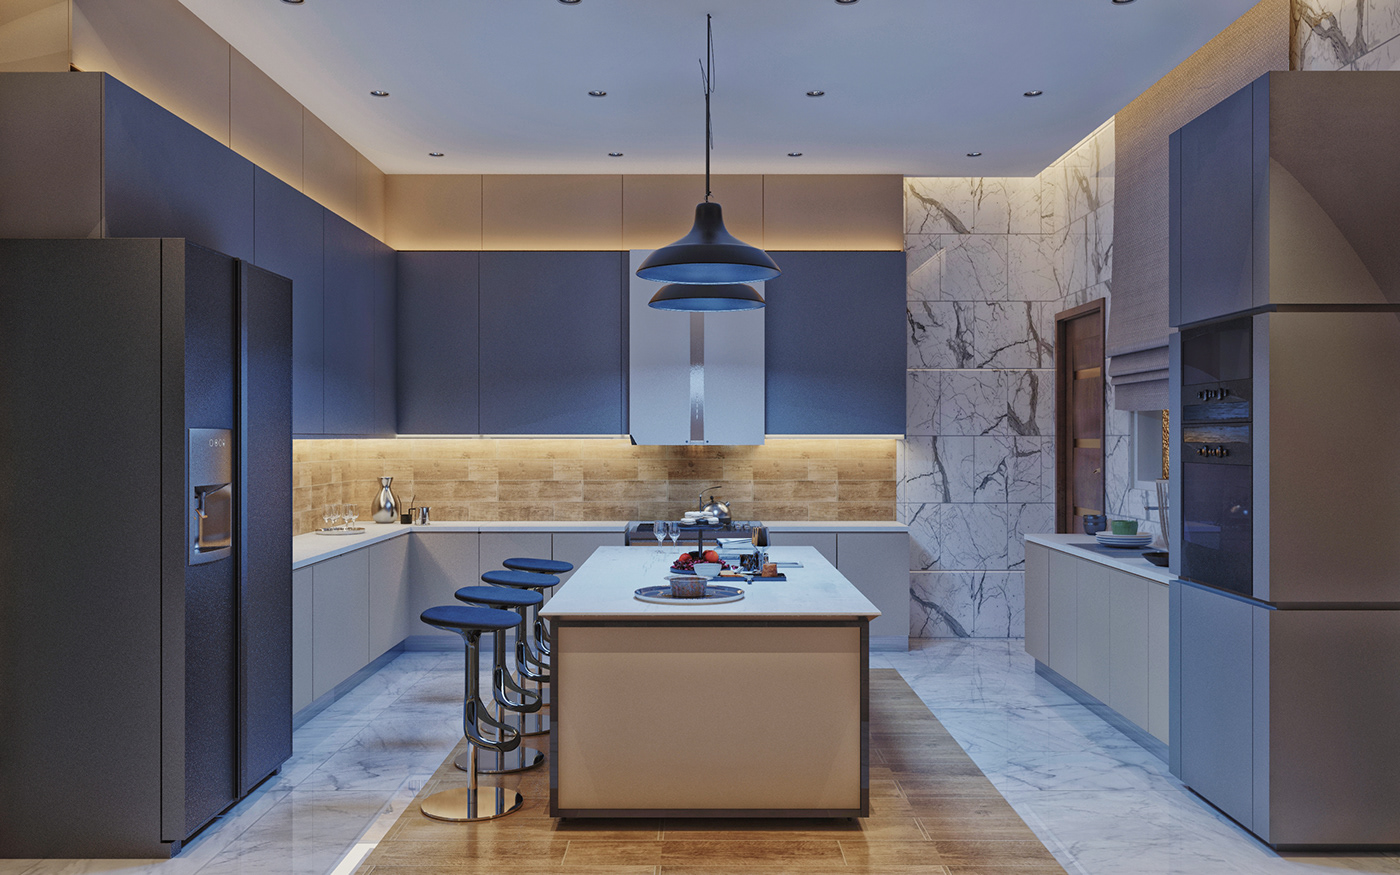 architecture design inteiror kitchen KSA riyadh